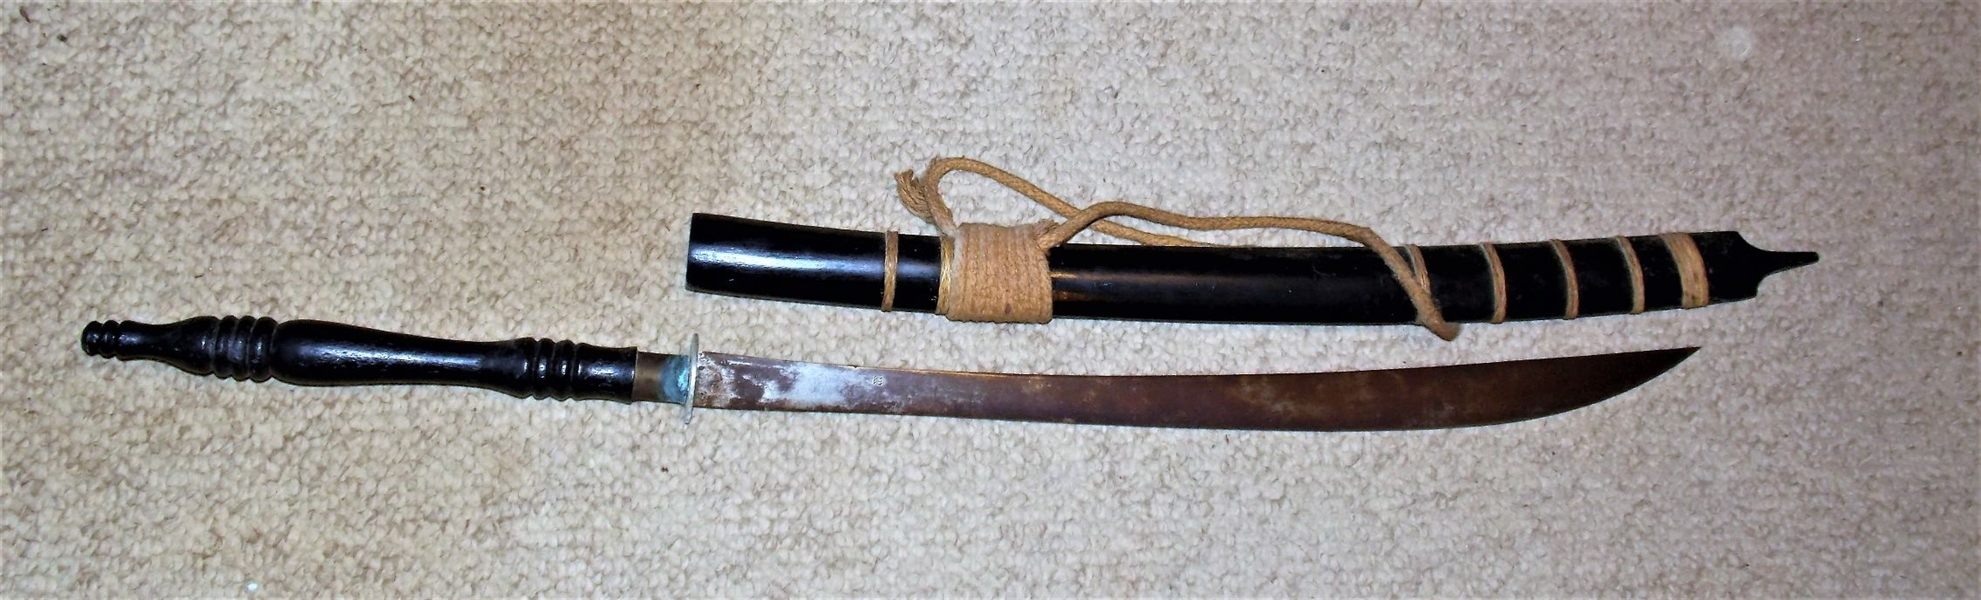 Sword in Wood Sheath - Measures 38"